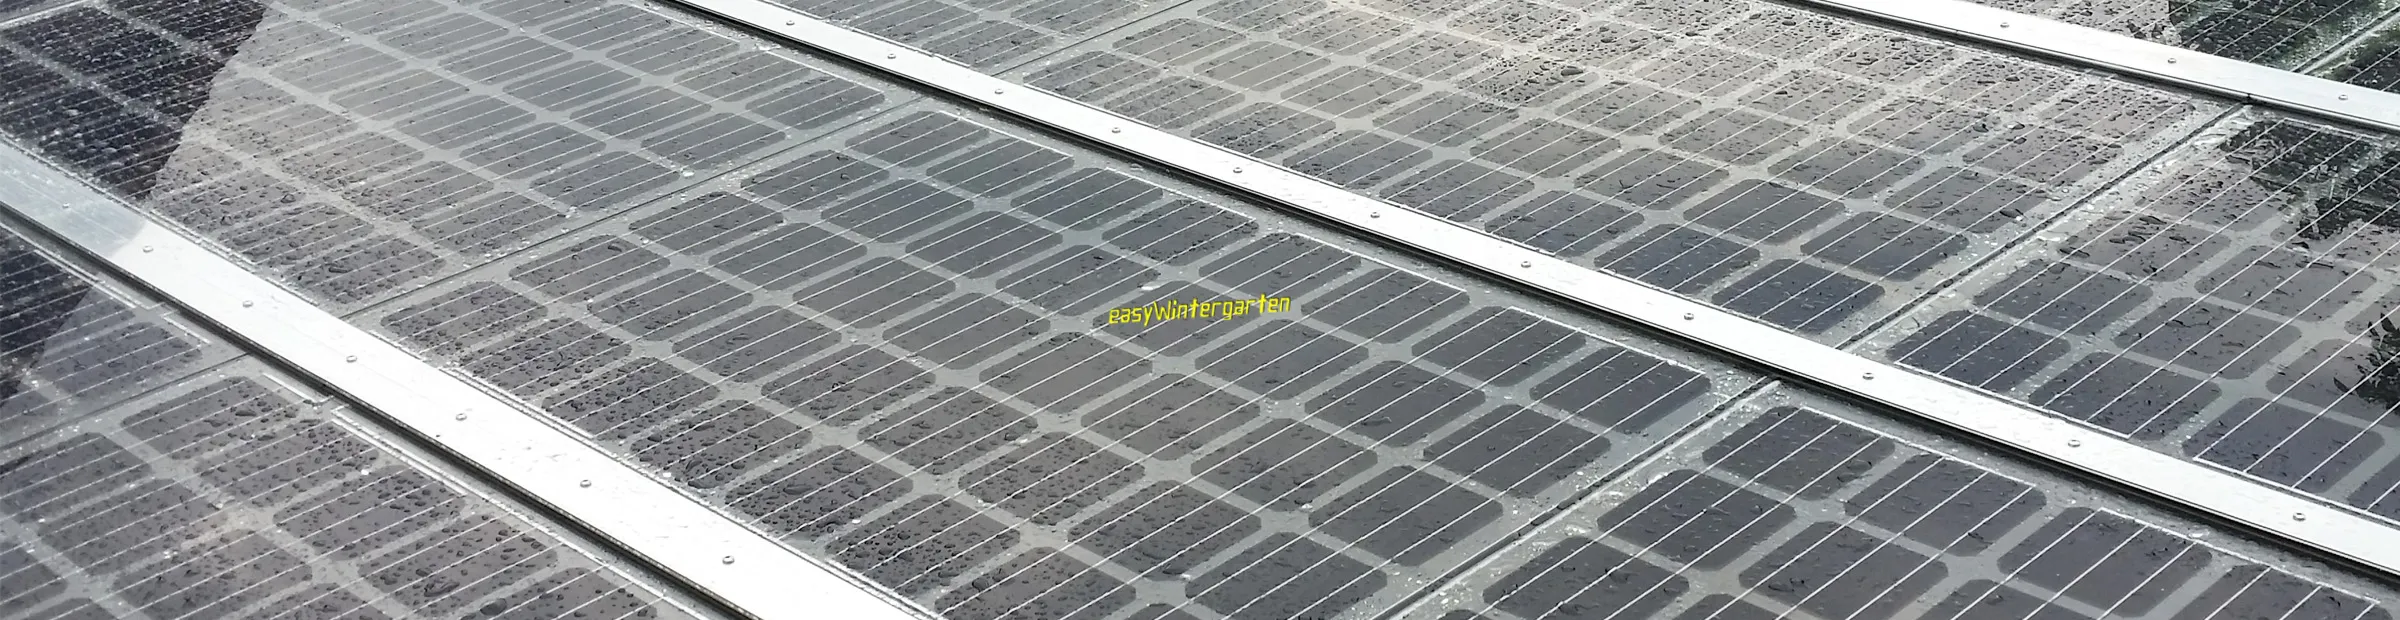 Solar Terrassendach - Flaches Dach mit doppelglas Modulen